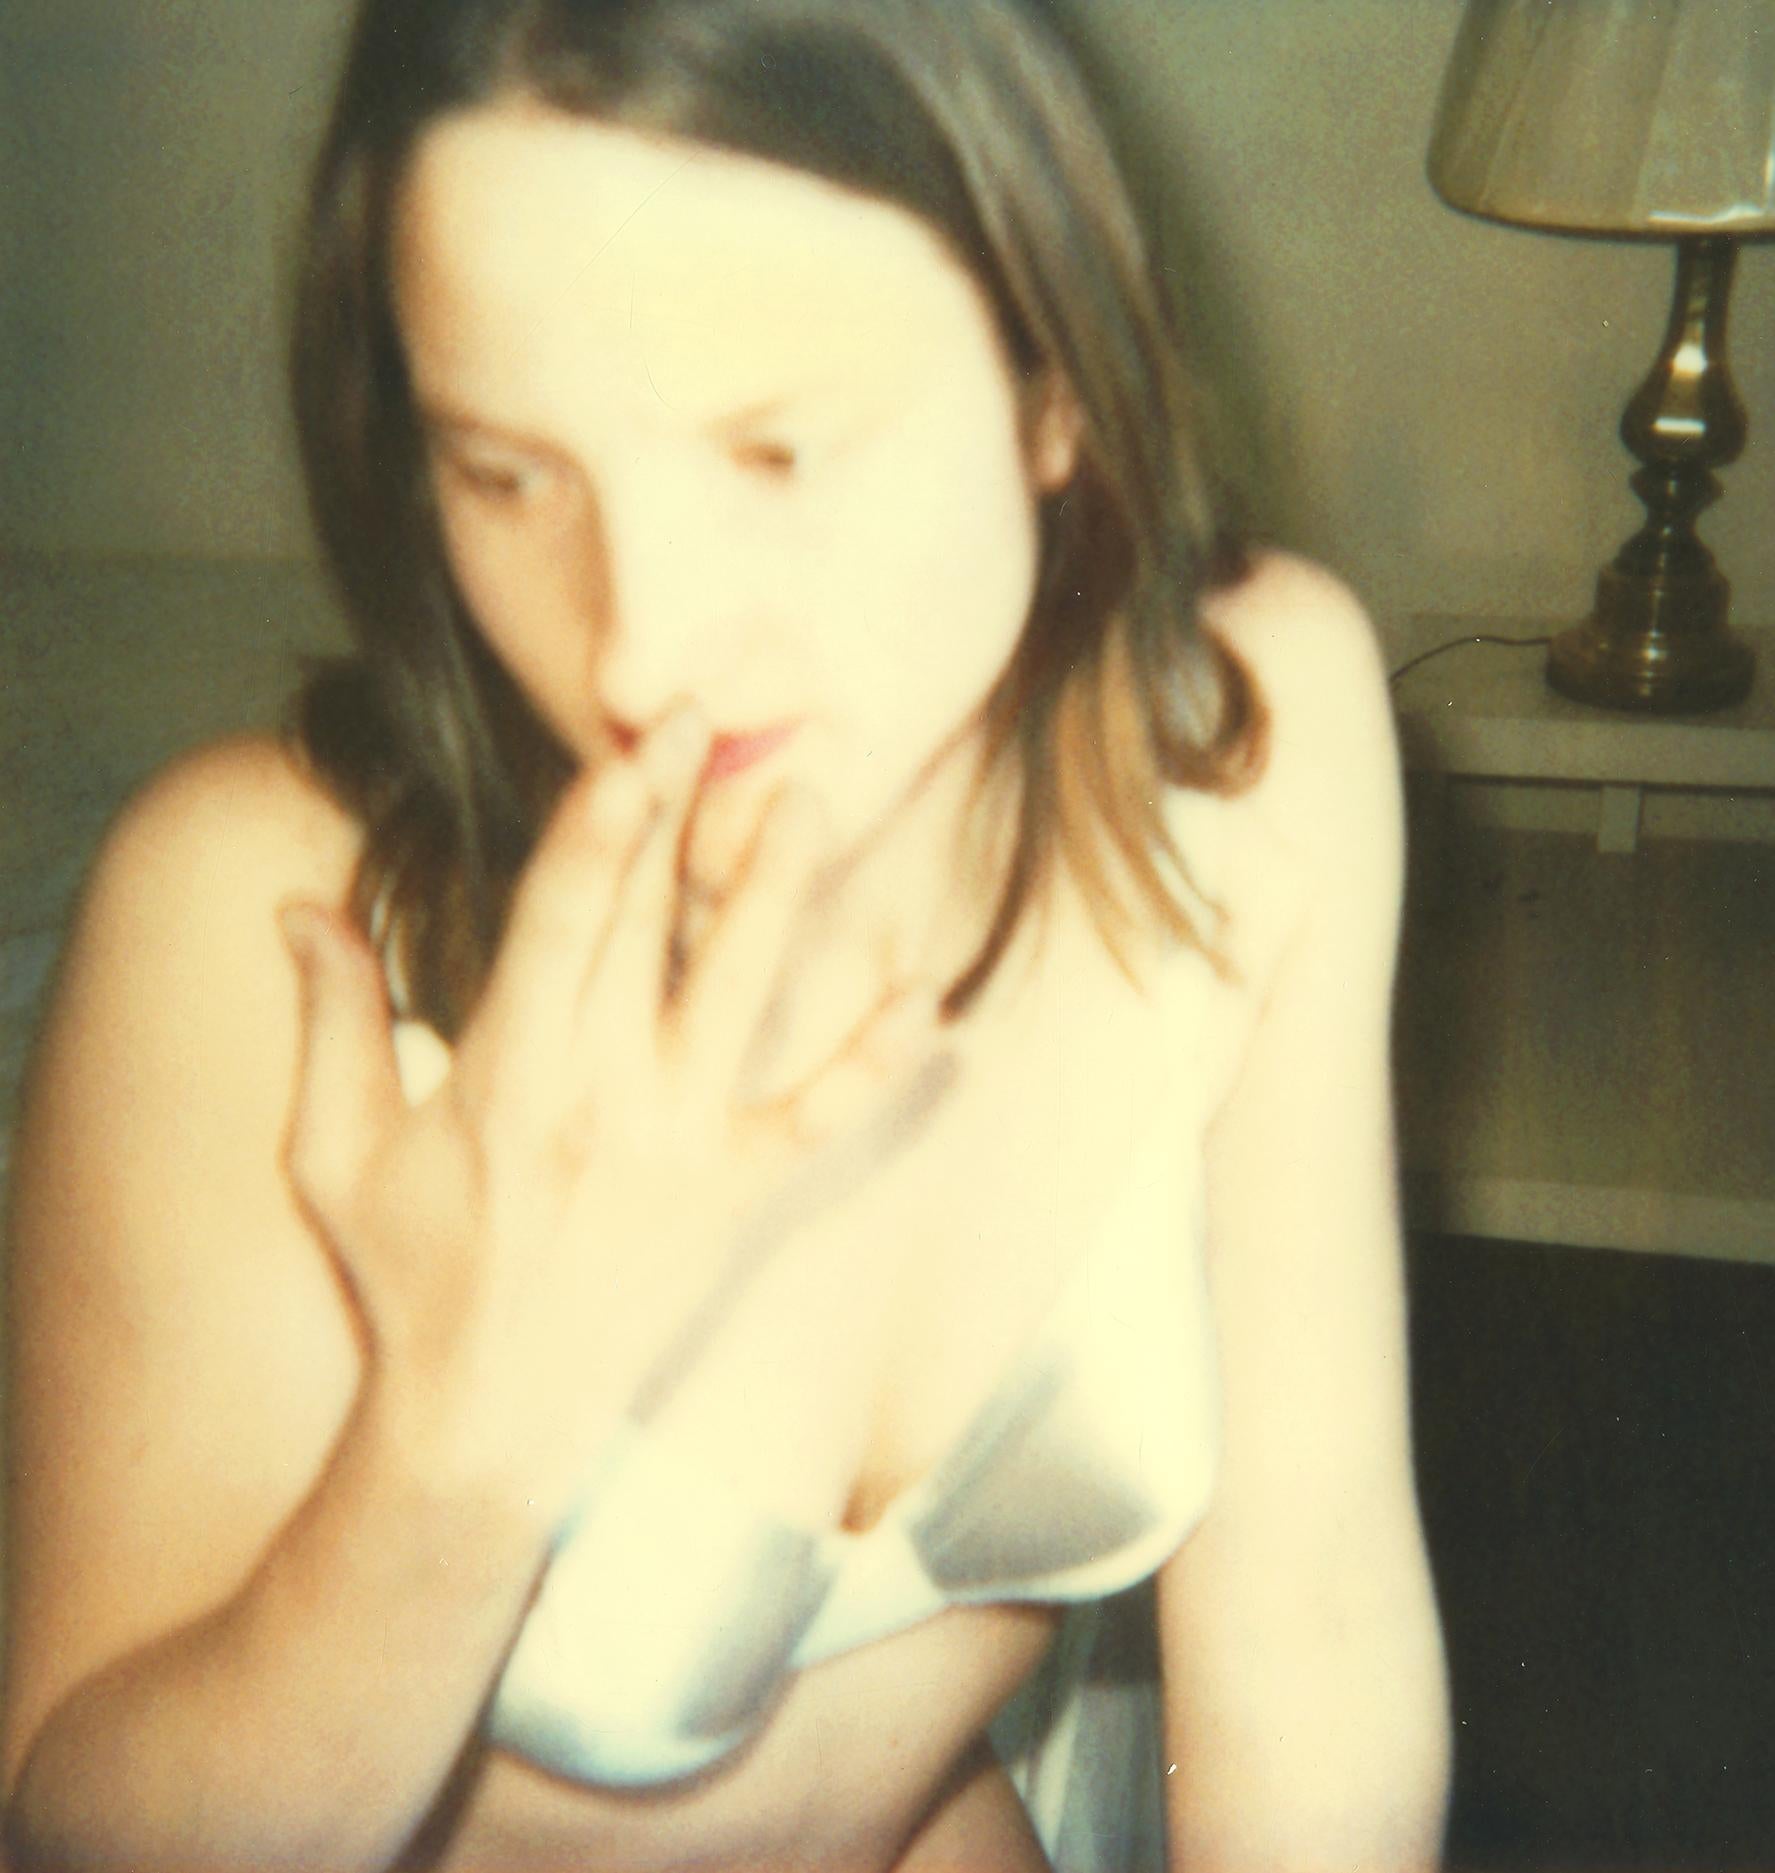 Silver Bra (29 Palms, CA) - Polaroid, Contemporary - Photograph de Stefanie Schneider